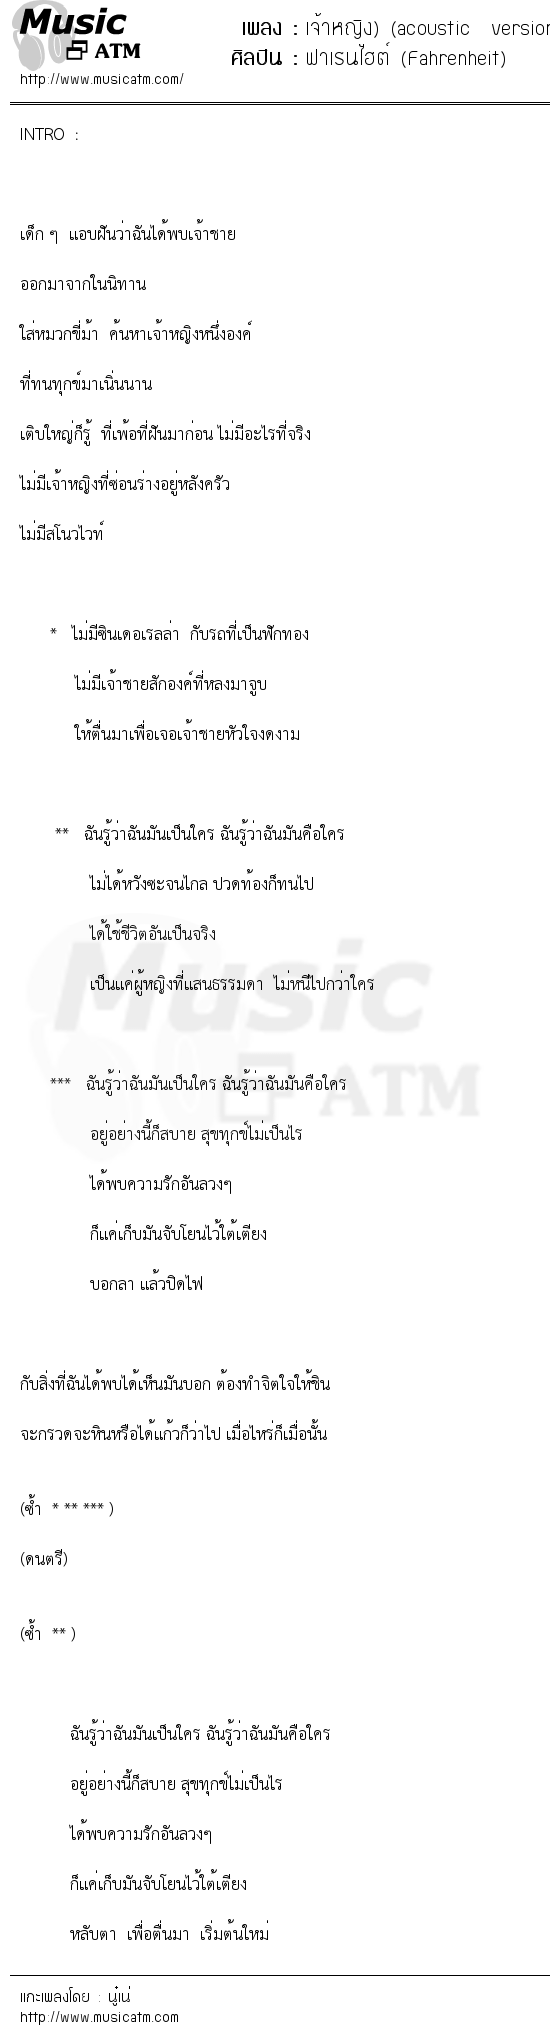 เนื้อเพลง เจ้าหญิง) (acoustic version - ฟาเรนไฮต์ (Fahrenheit) | เพลงไทย